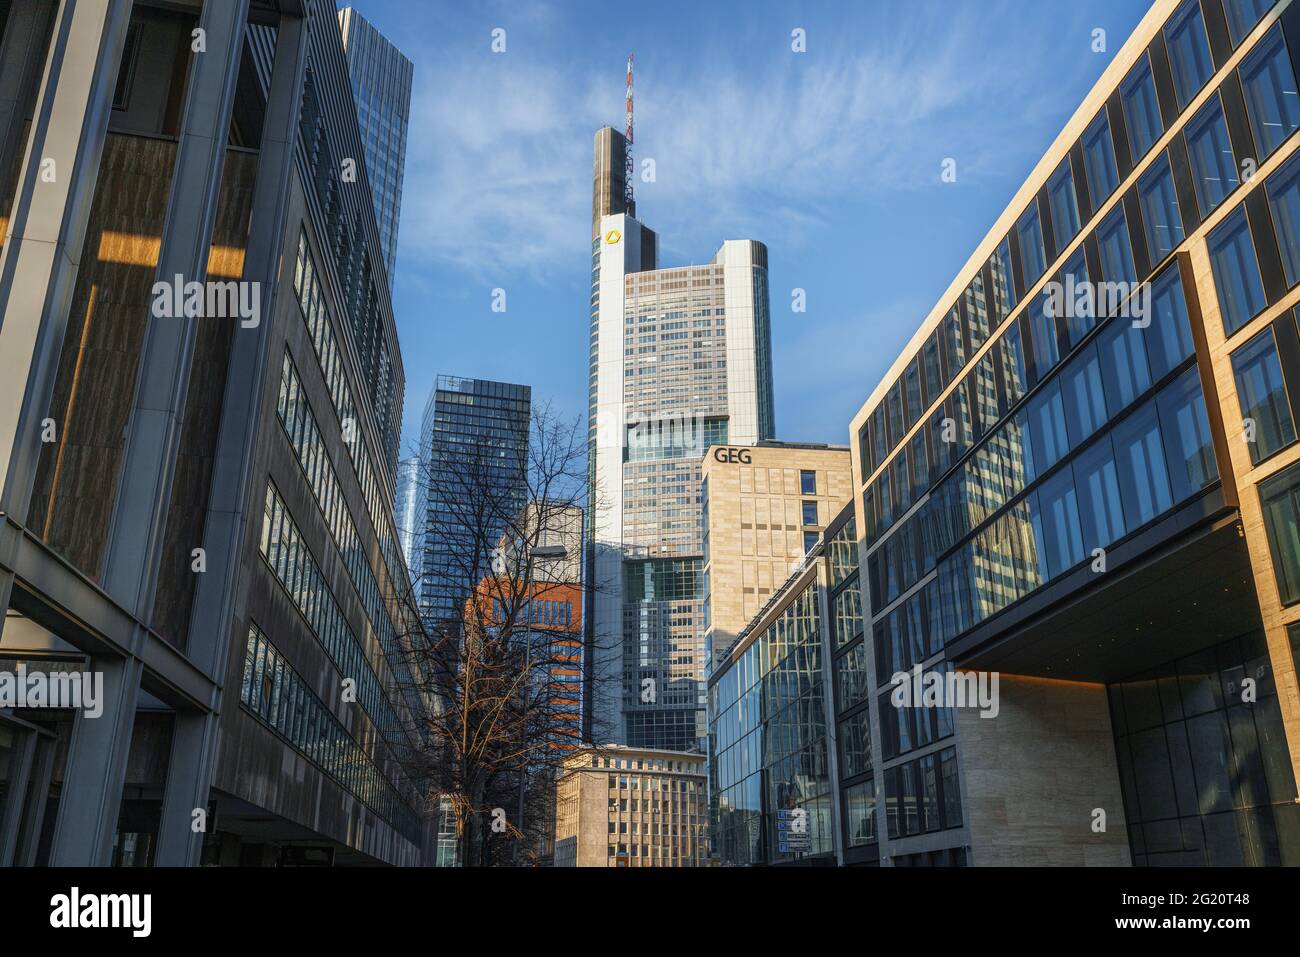 Bâtiments modernes dans le quartier financier de Francfort avec la Tour Commerzbank - Francfort, Allemagne Banque D'Images